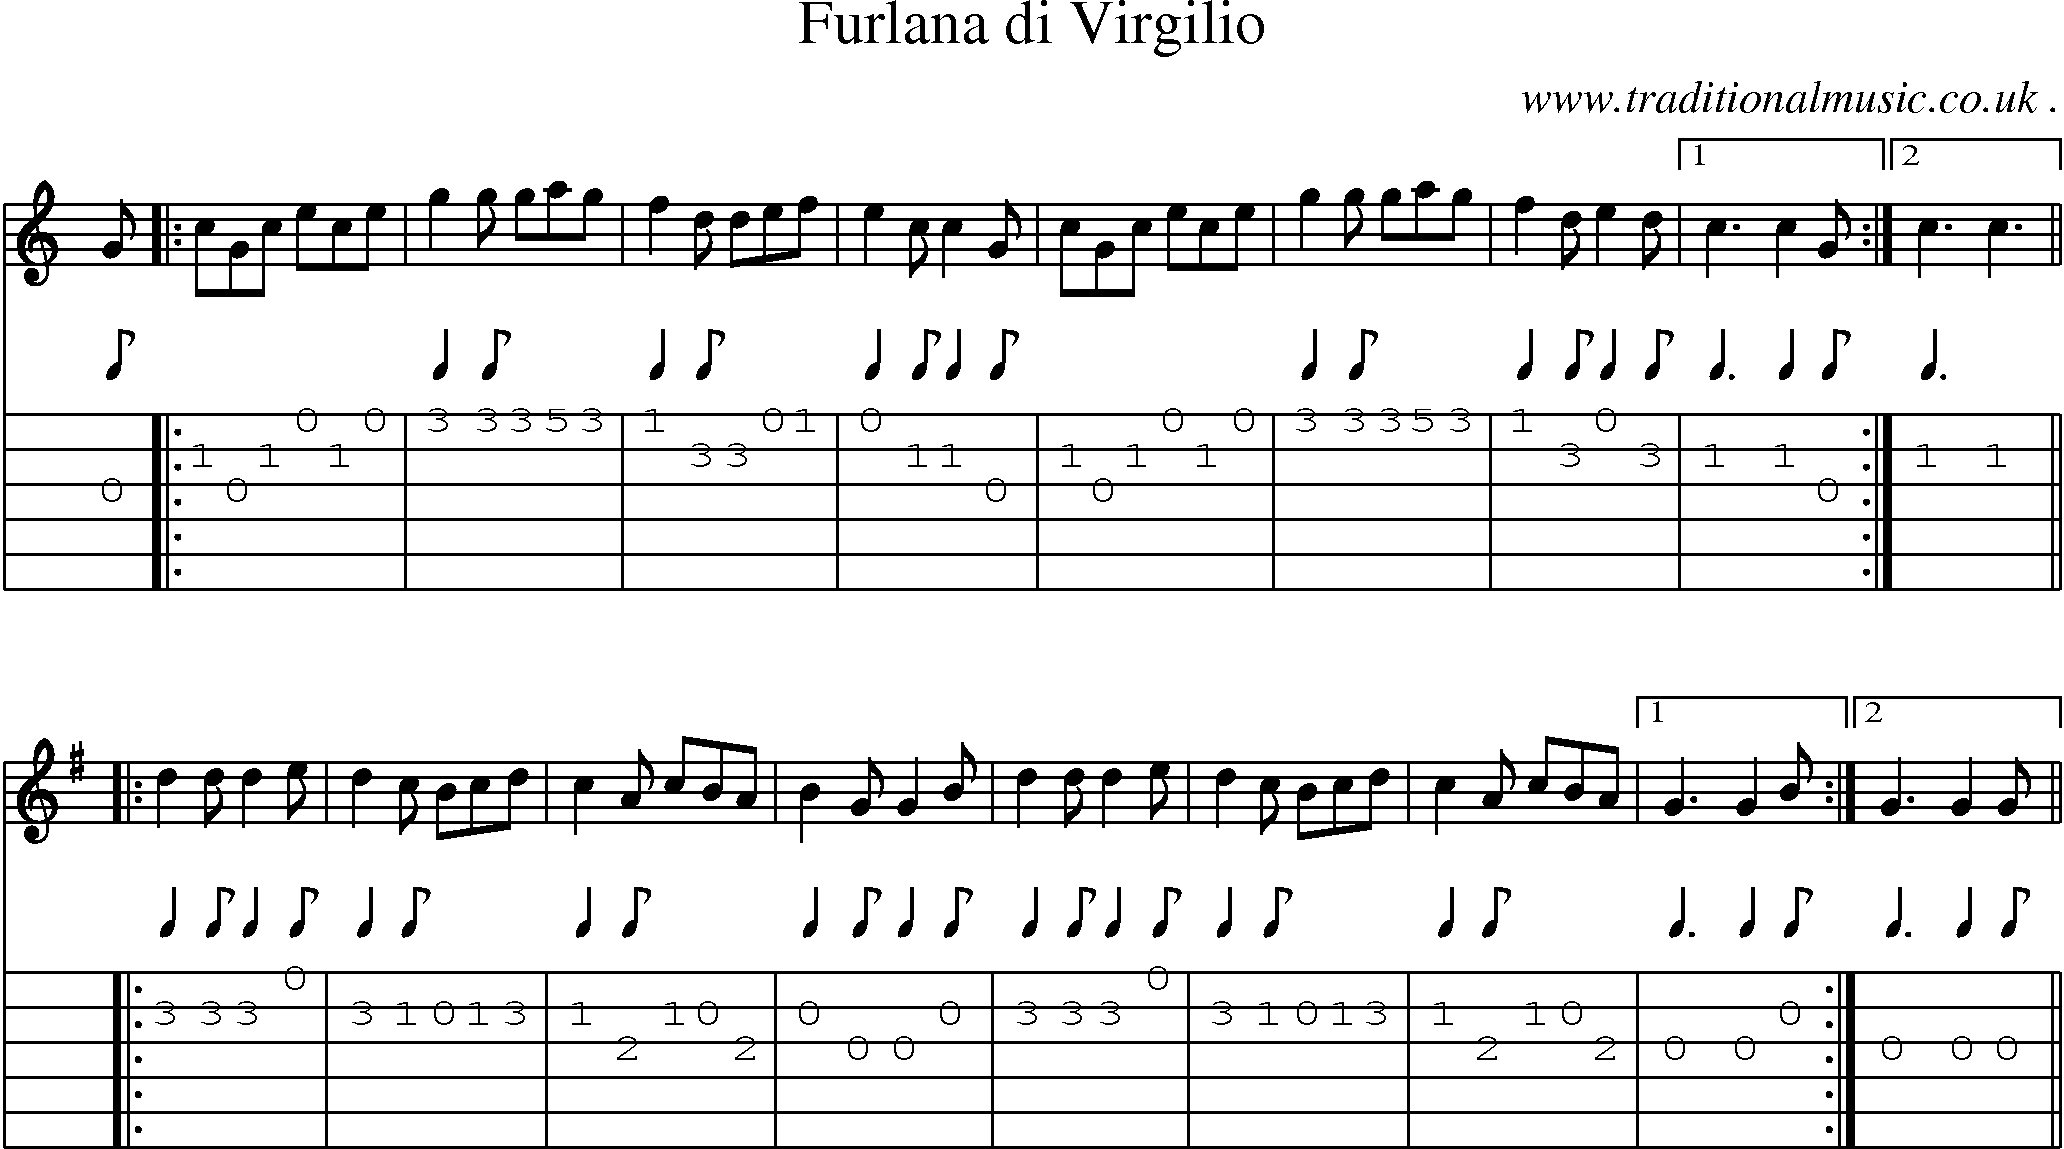 Sheet-Music and Guitar Tabs for Furlana Di Virgilio